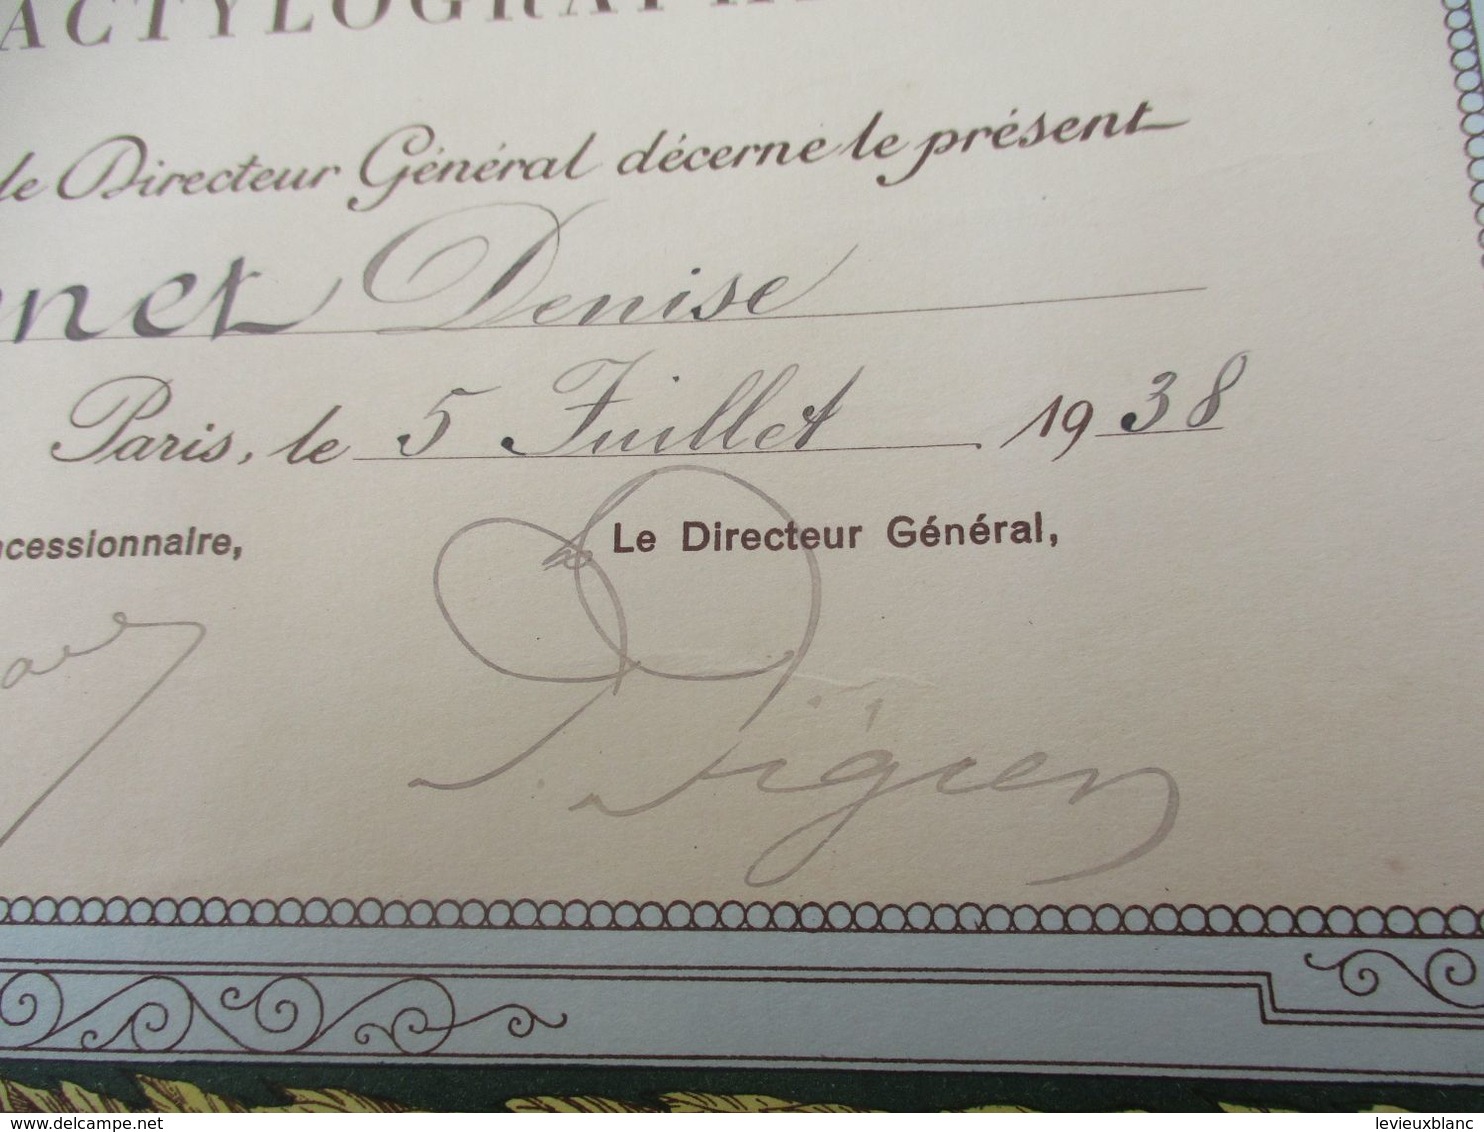 Diplôme De Formation/Cours PIGIER/ Section D'Evreux/Certificat DeDACTYLOGRAPHIE/Dronet/PARIS/1938                DIP237 - Diploma & School Reports